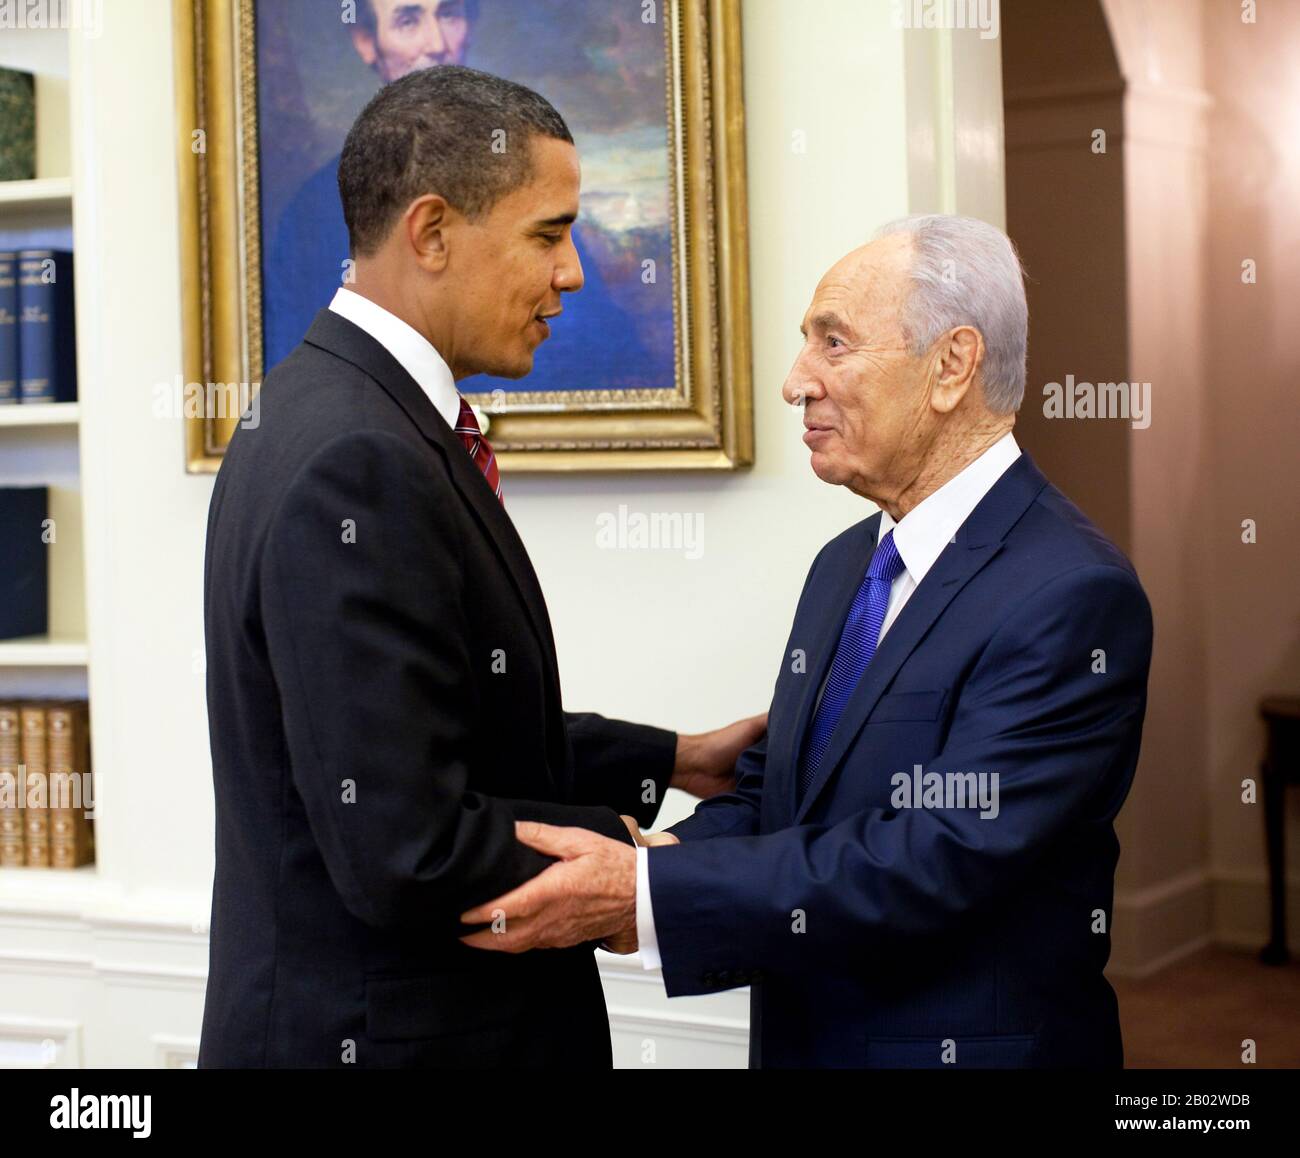 Shimon Peres (nacido el 2 de agosto de 1923) es un estadista israelí nacido en Polonia. Fue el noveno Presidente de Israel de 2007 a 2014. Peres sirvió dos veces como primer Ministro de Israel y dos veces como primer Ministro interino, y fue miembro de 12 gabinetes en una carrera política que abarca más de 66 años. Peres fue elegido miembro del Knesset en noviembre de 1959 y, excepto por un hiato de tres meses de duración a principios de 2006, sirvió continuamente hasta 2007, cuando se convirtió en Presidente. Ocupó varias posiciones diplomáticas y militares durante y directamente después de la Guerra de Independencia de Israel. Su primer gobierno de alto nivel p Foto de stock